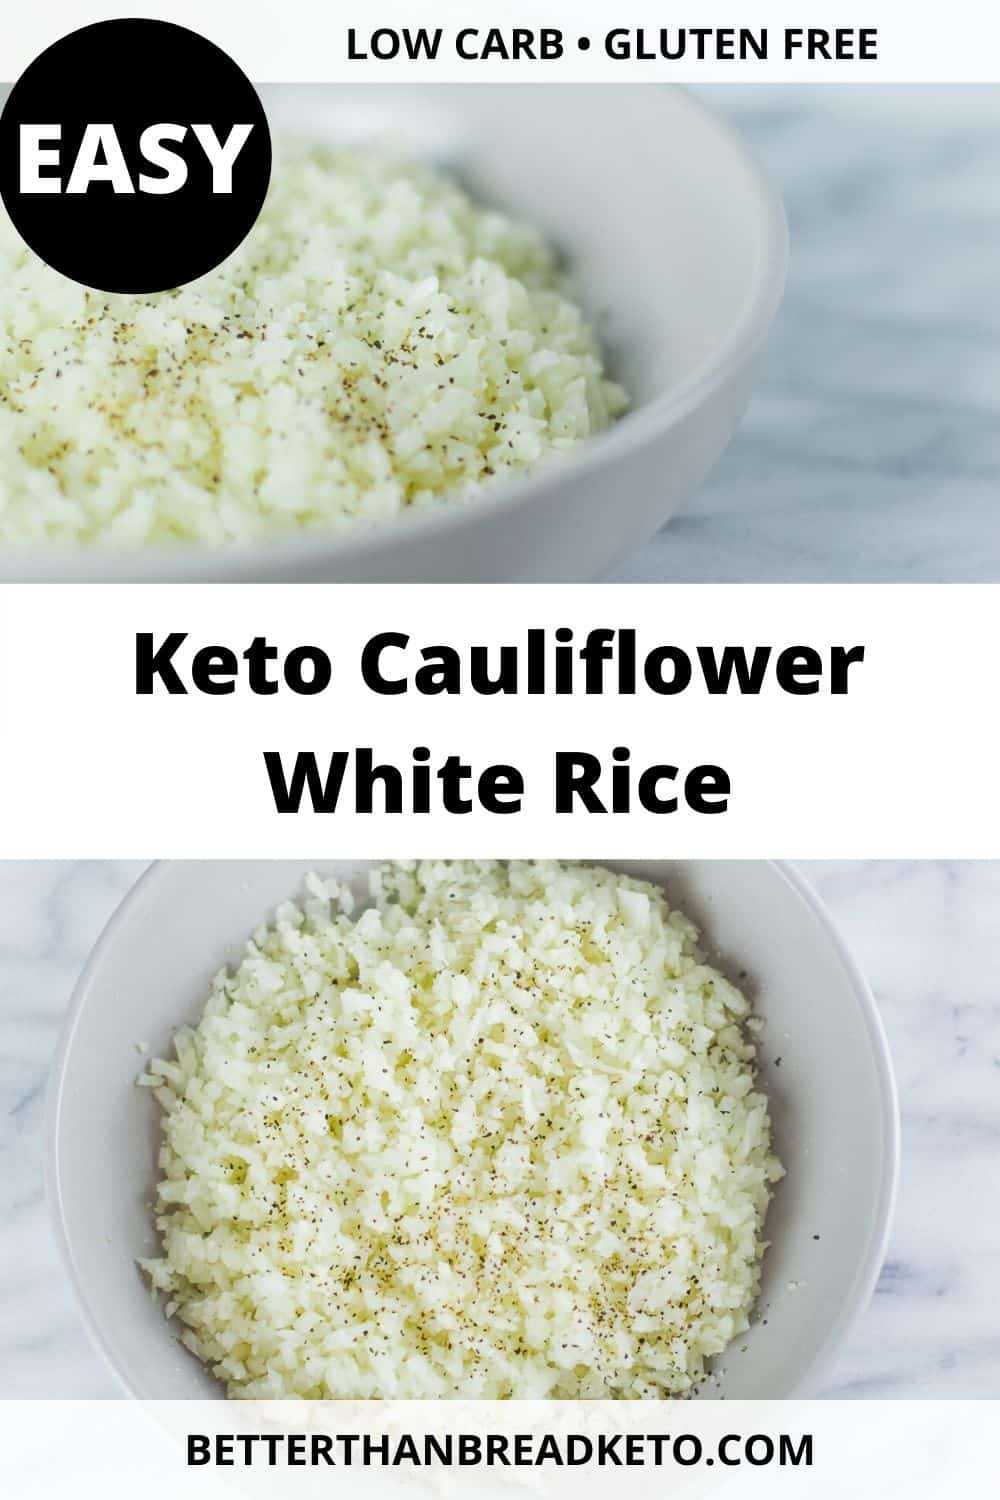 Keto Cauliflower White Rice